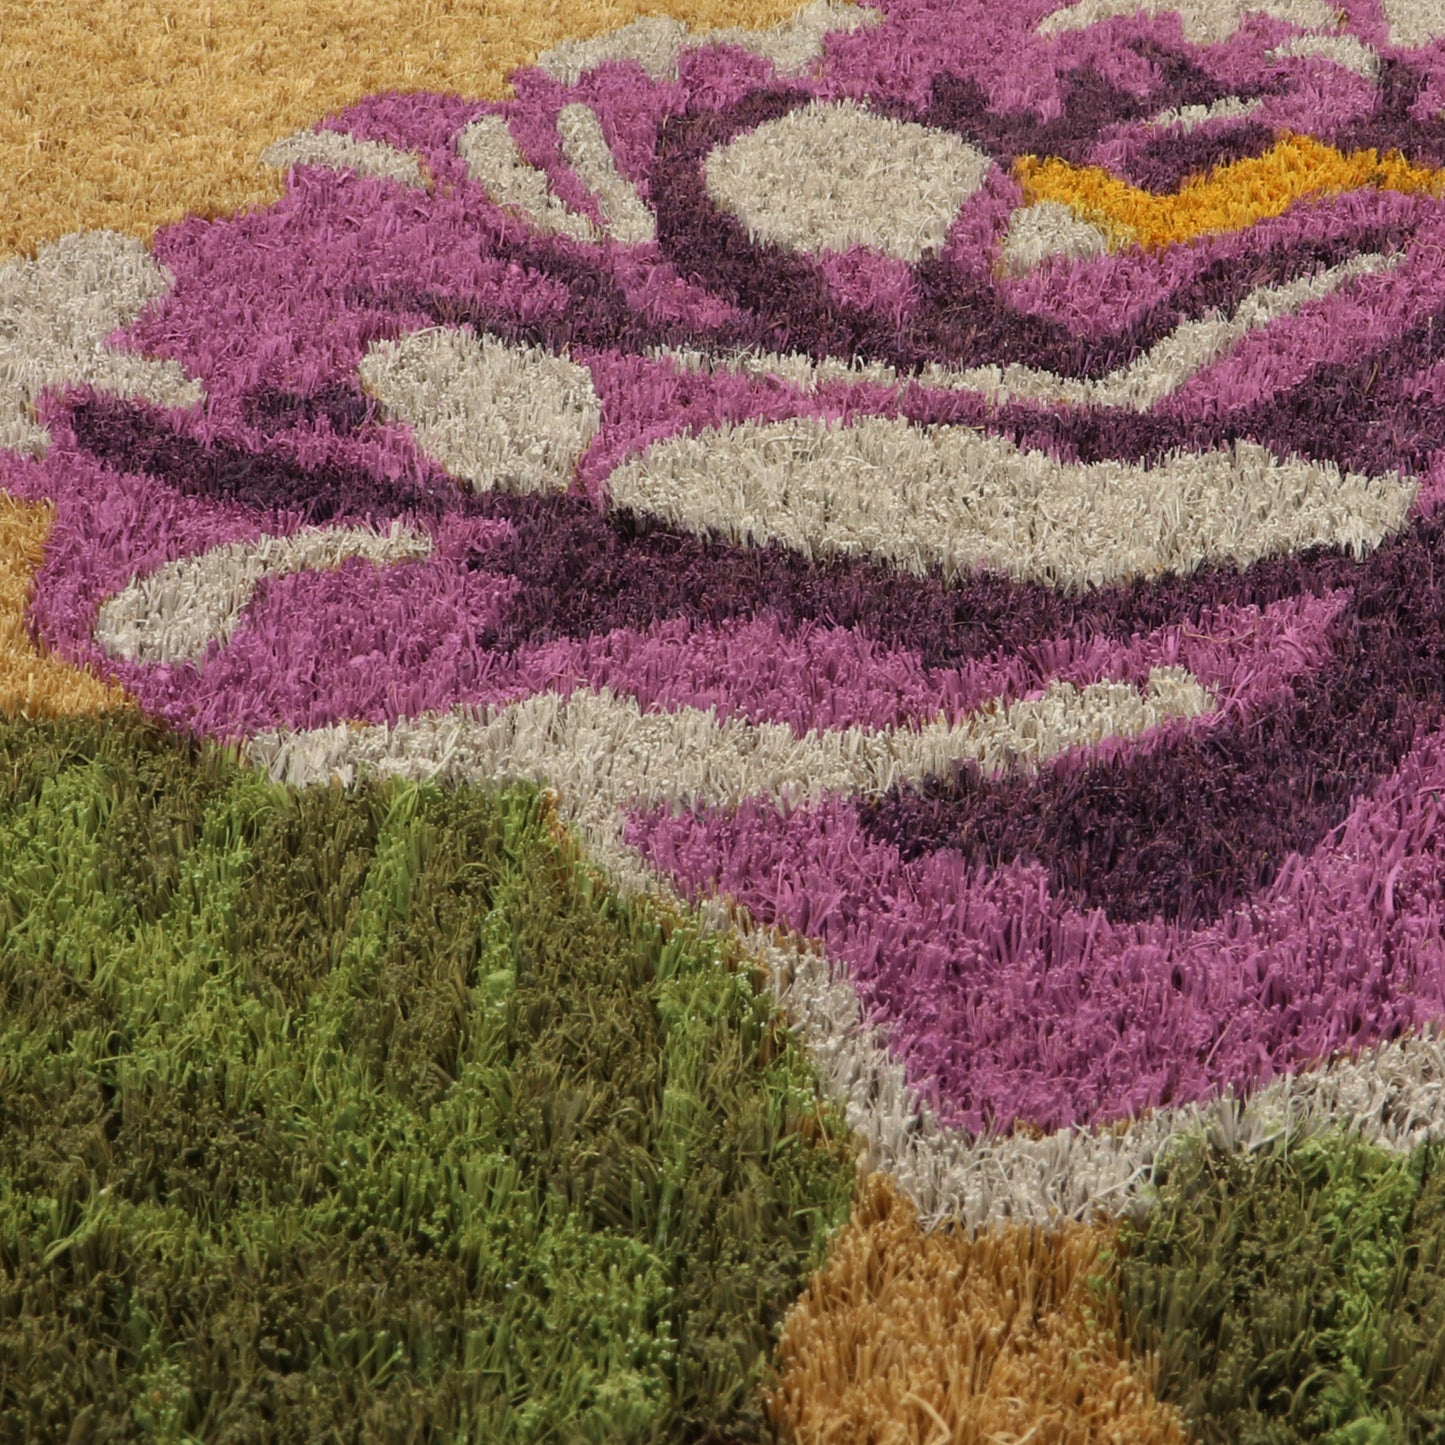 Flower Coir 40x60cm - DoormatsOnline